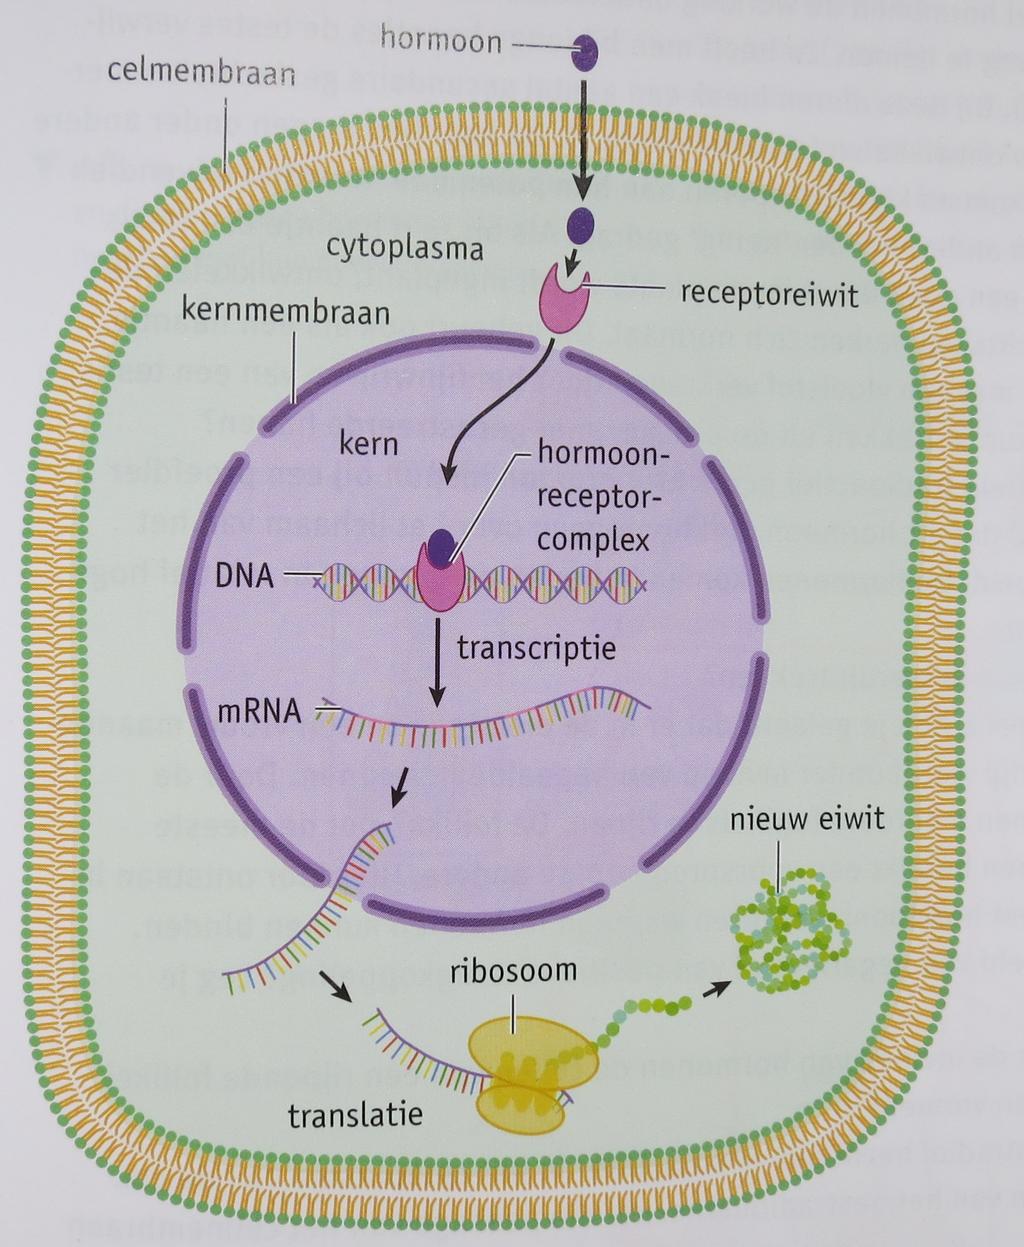 De hormonen zijn werkzaam in organen waarvan de cellen hormoonreceptoren voor het hormoon bezitten. Deze organen worden doelwitorganen genoemd.